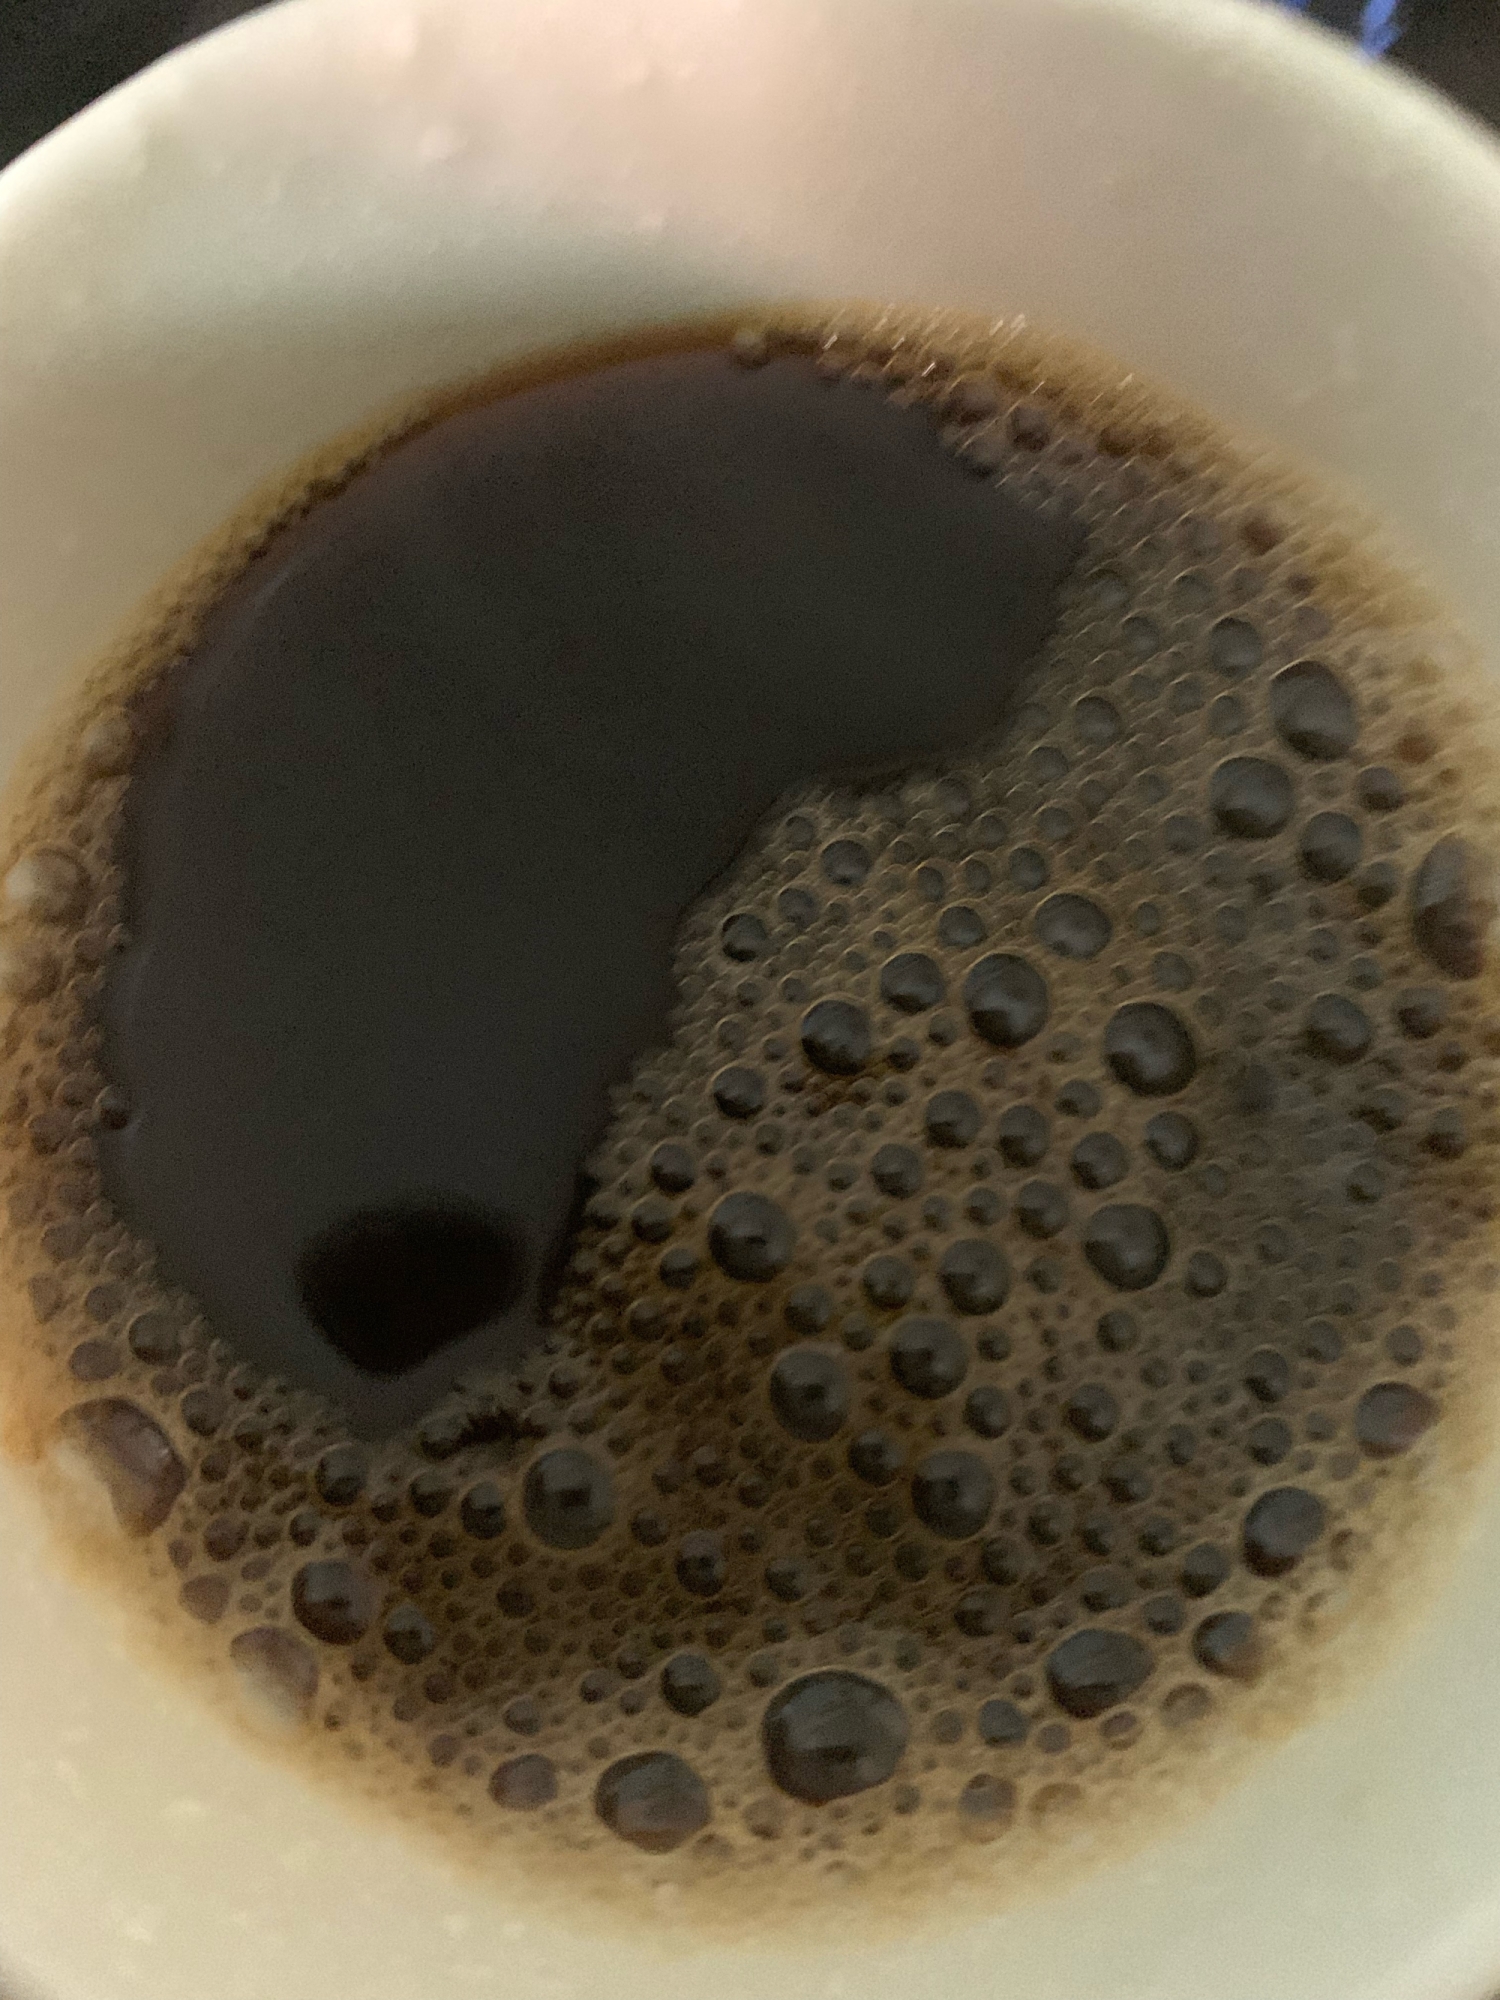 黒ごまコーヒー